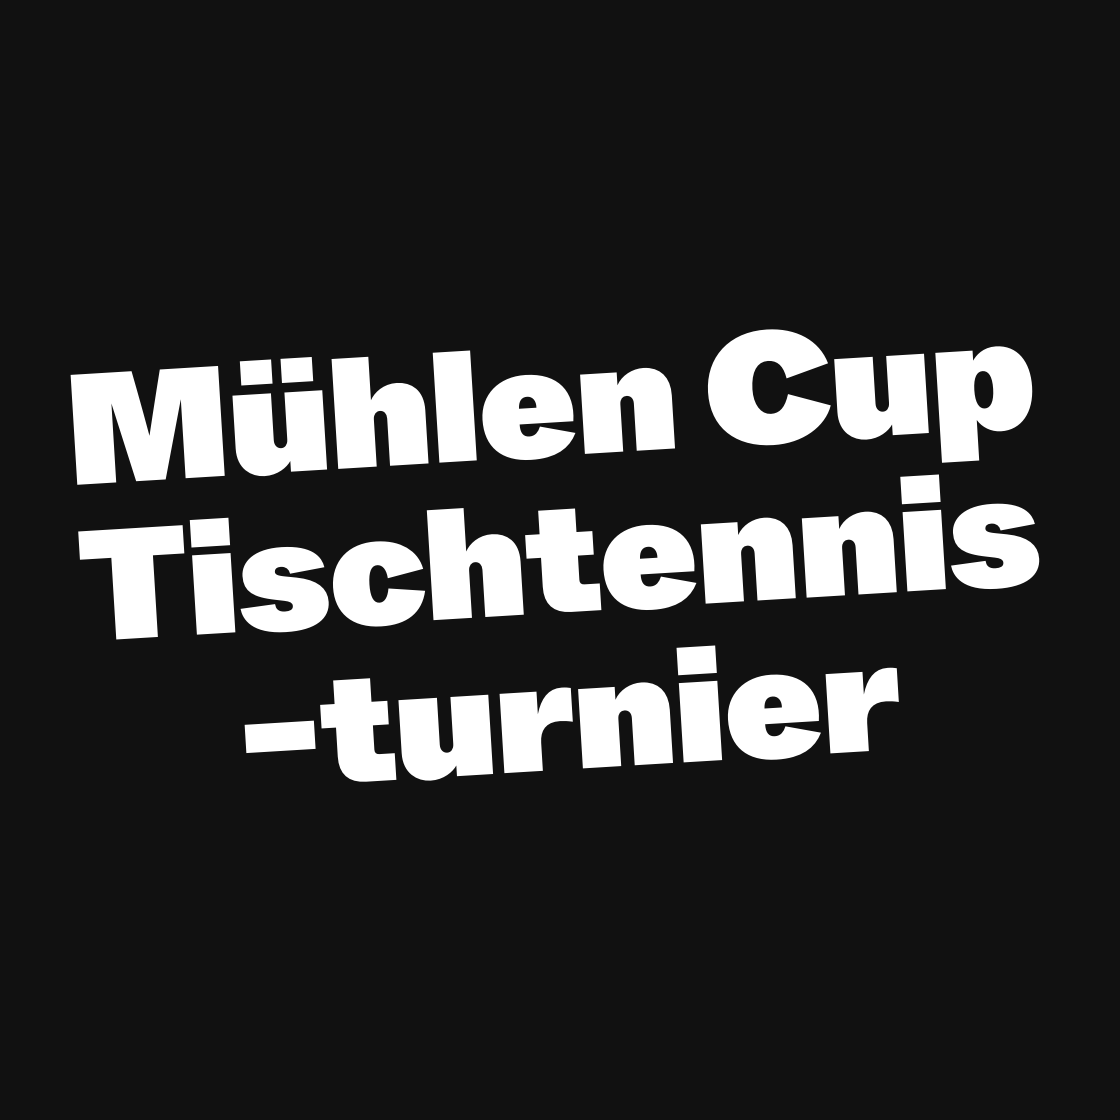 Mühlen Cup Tischtennisturnier